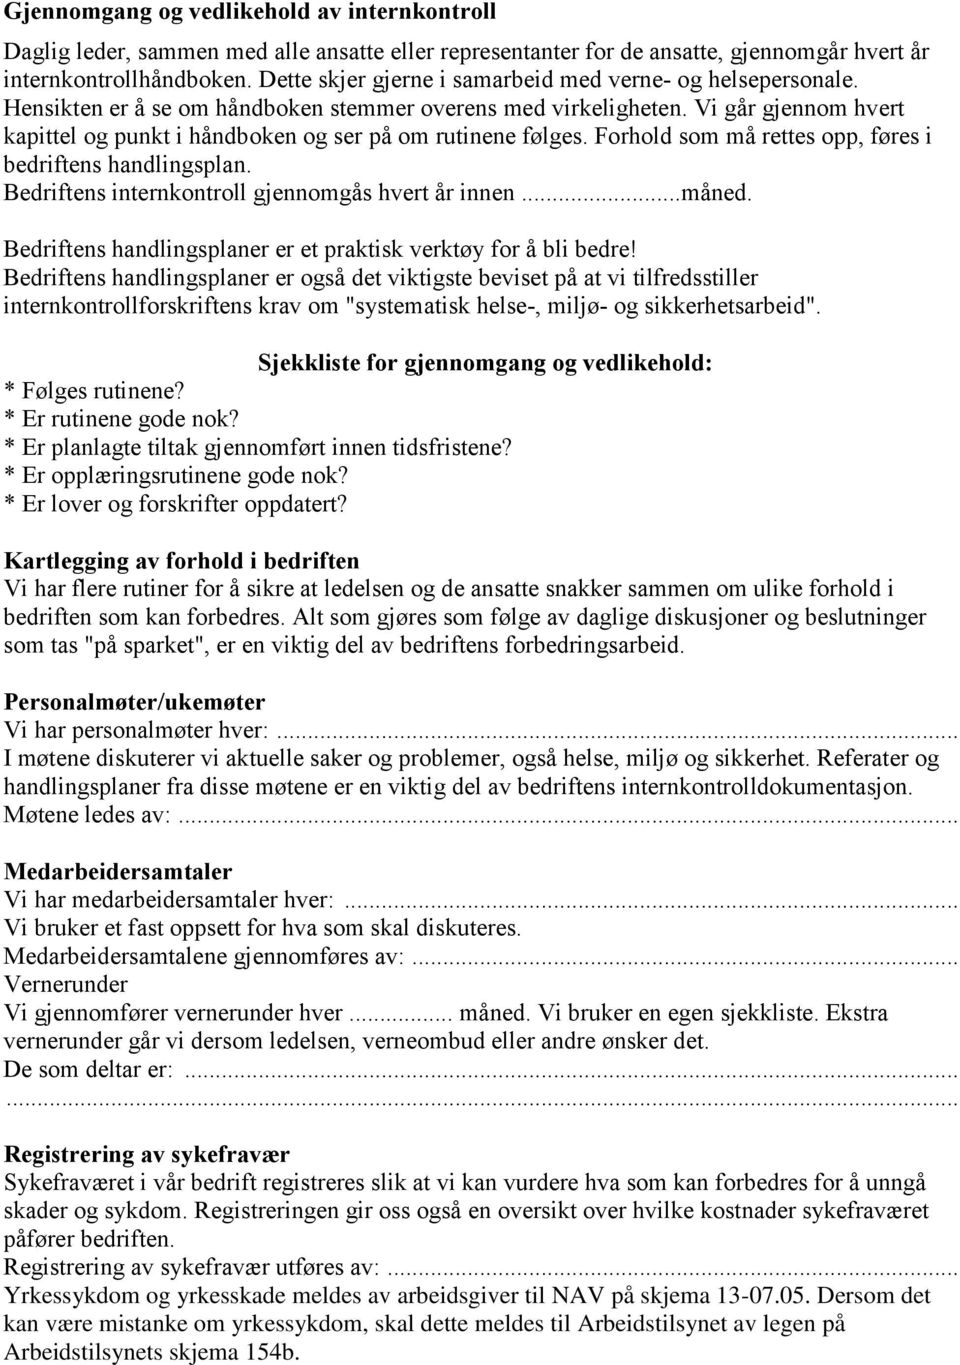 VEILEDNING TIL Å LAGE EGEN INTERNKONTROLL. for. mindre virksomheter innen  bygg- og anleggsfagene - PDF Gratis nedlasting